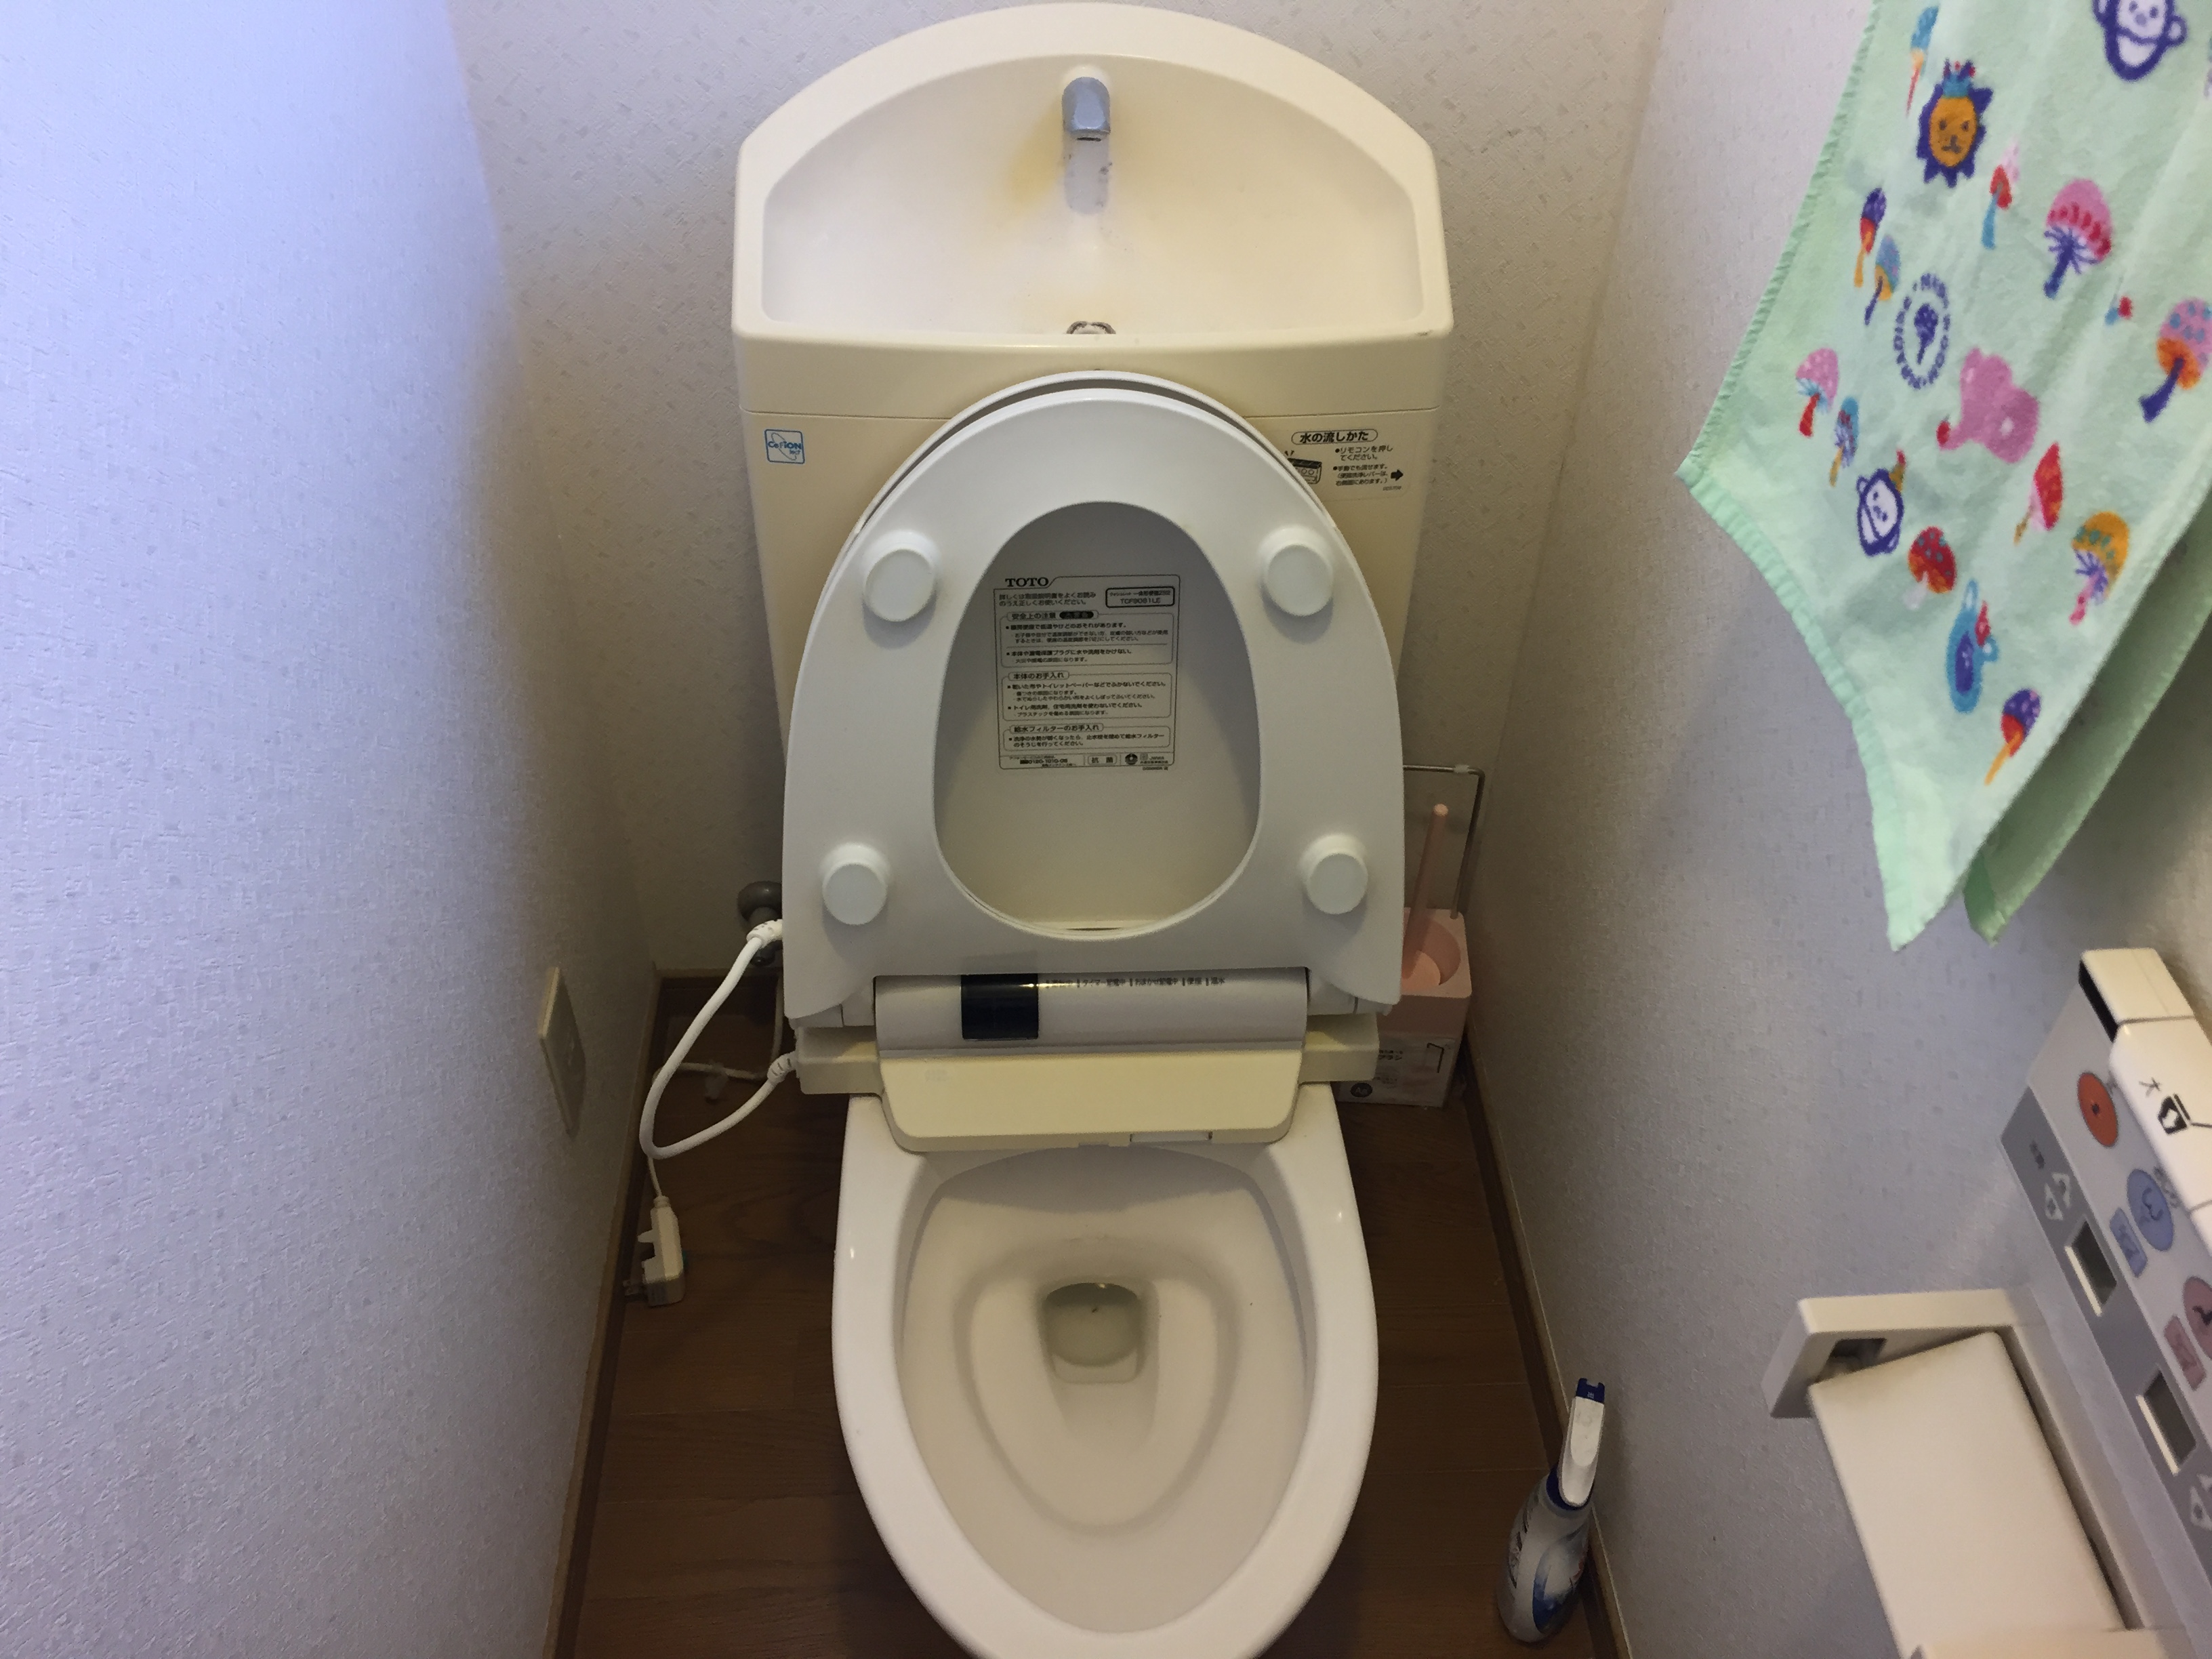 太田市のお家へトイレのお見積り現場調査に行ってきました